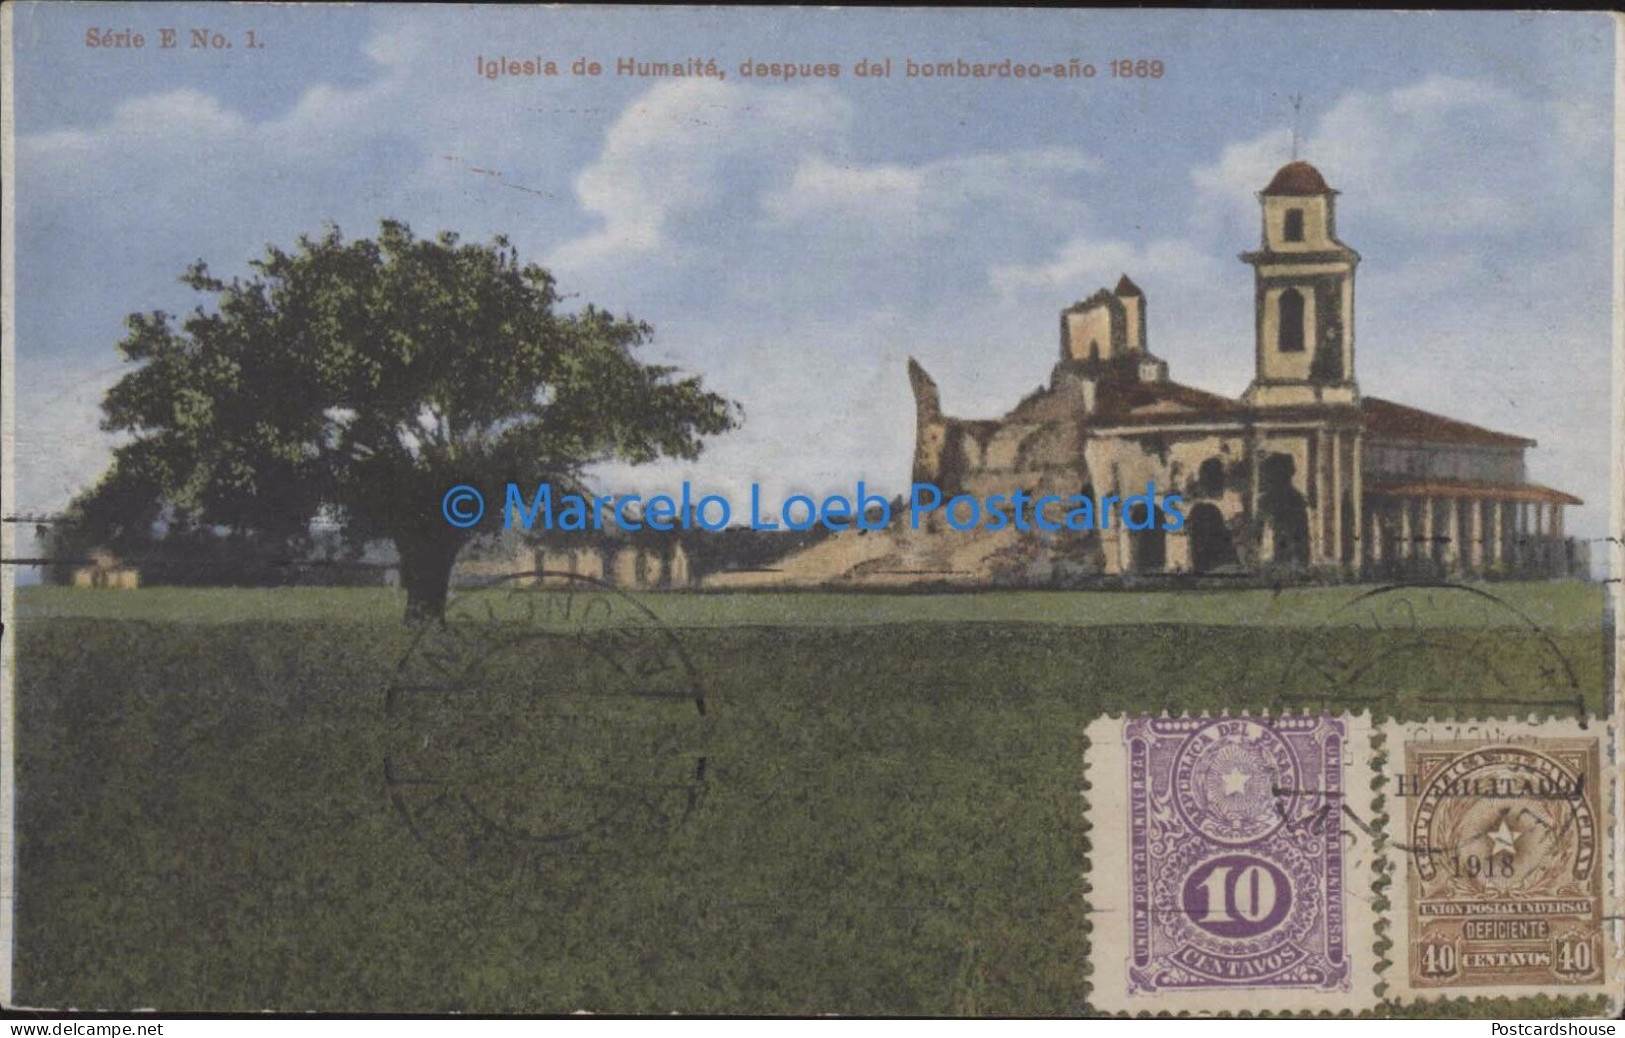 PARAGUAY IGLESIA DE HUMAITA DESPUES DEL BOMBARDEO 1889 SERIE E Nª 1 2539008 - Paraguay